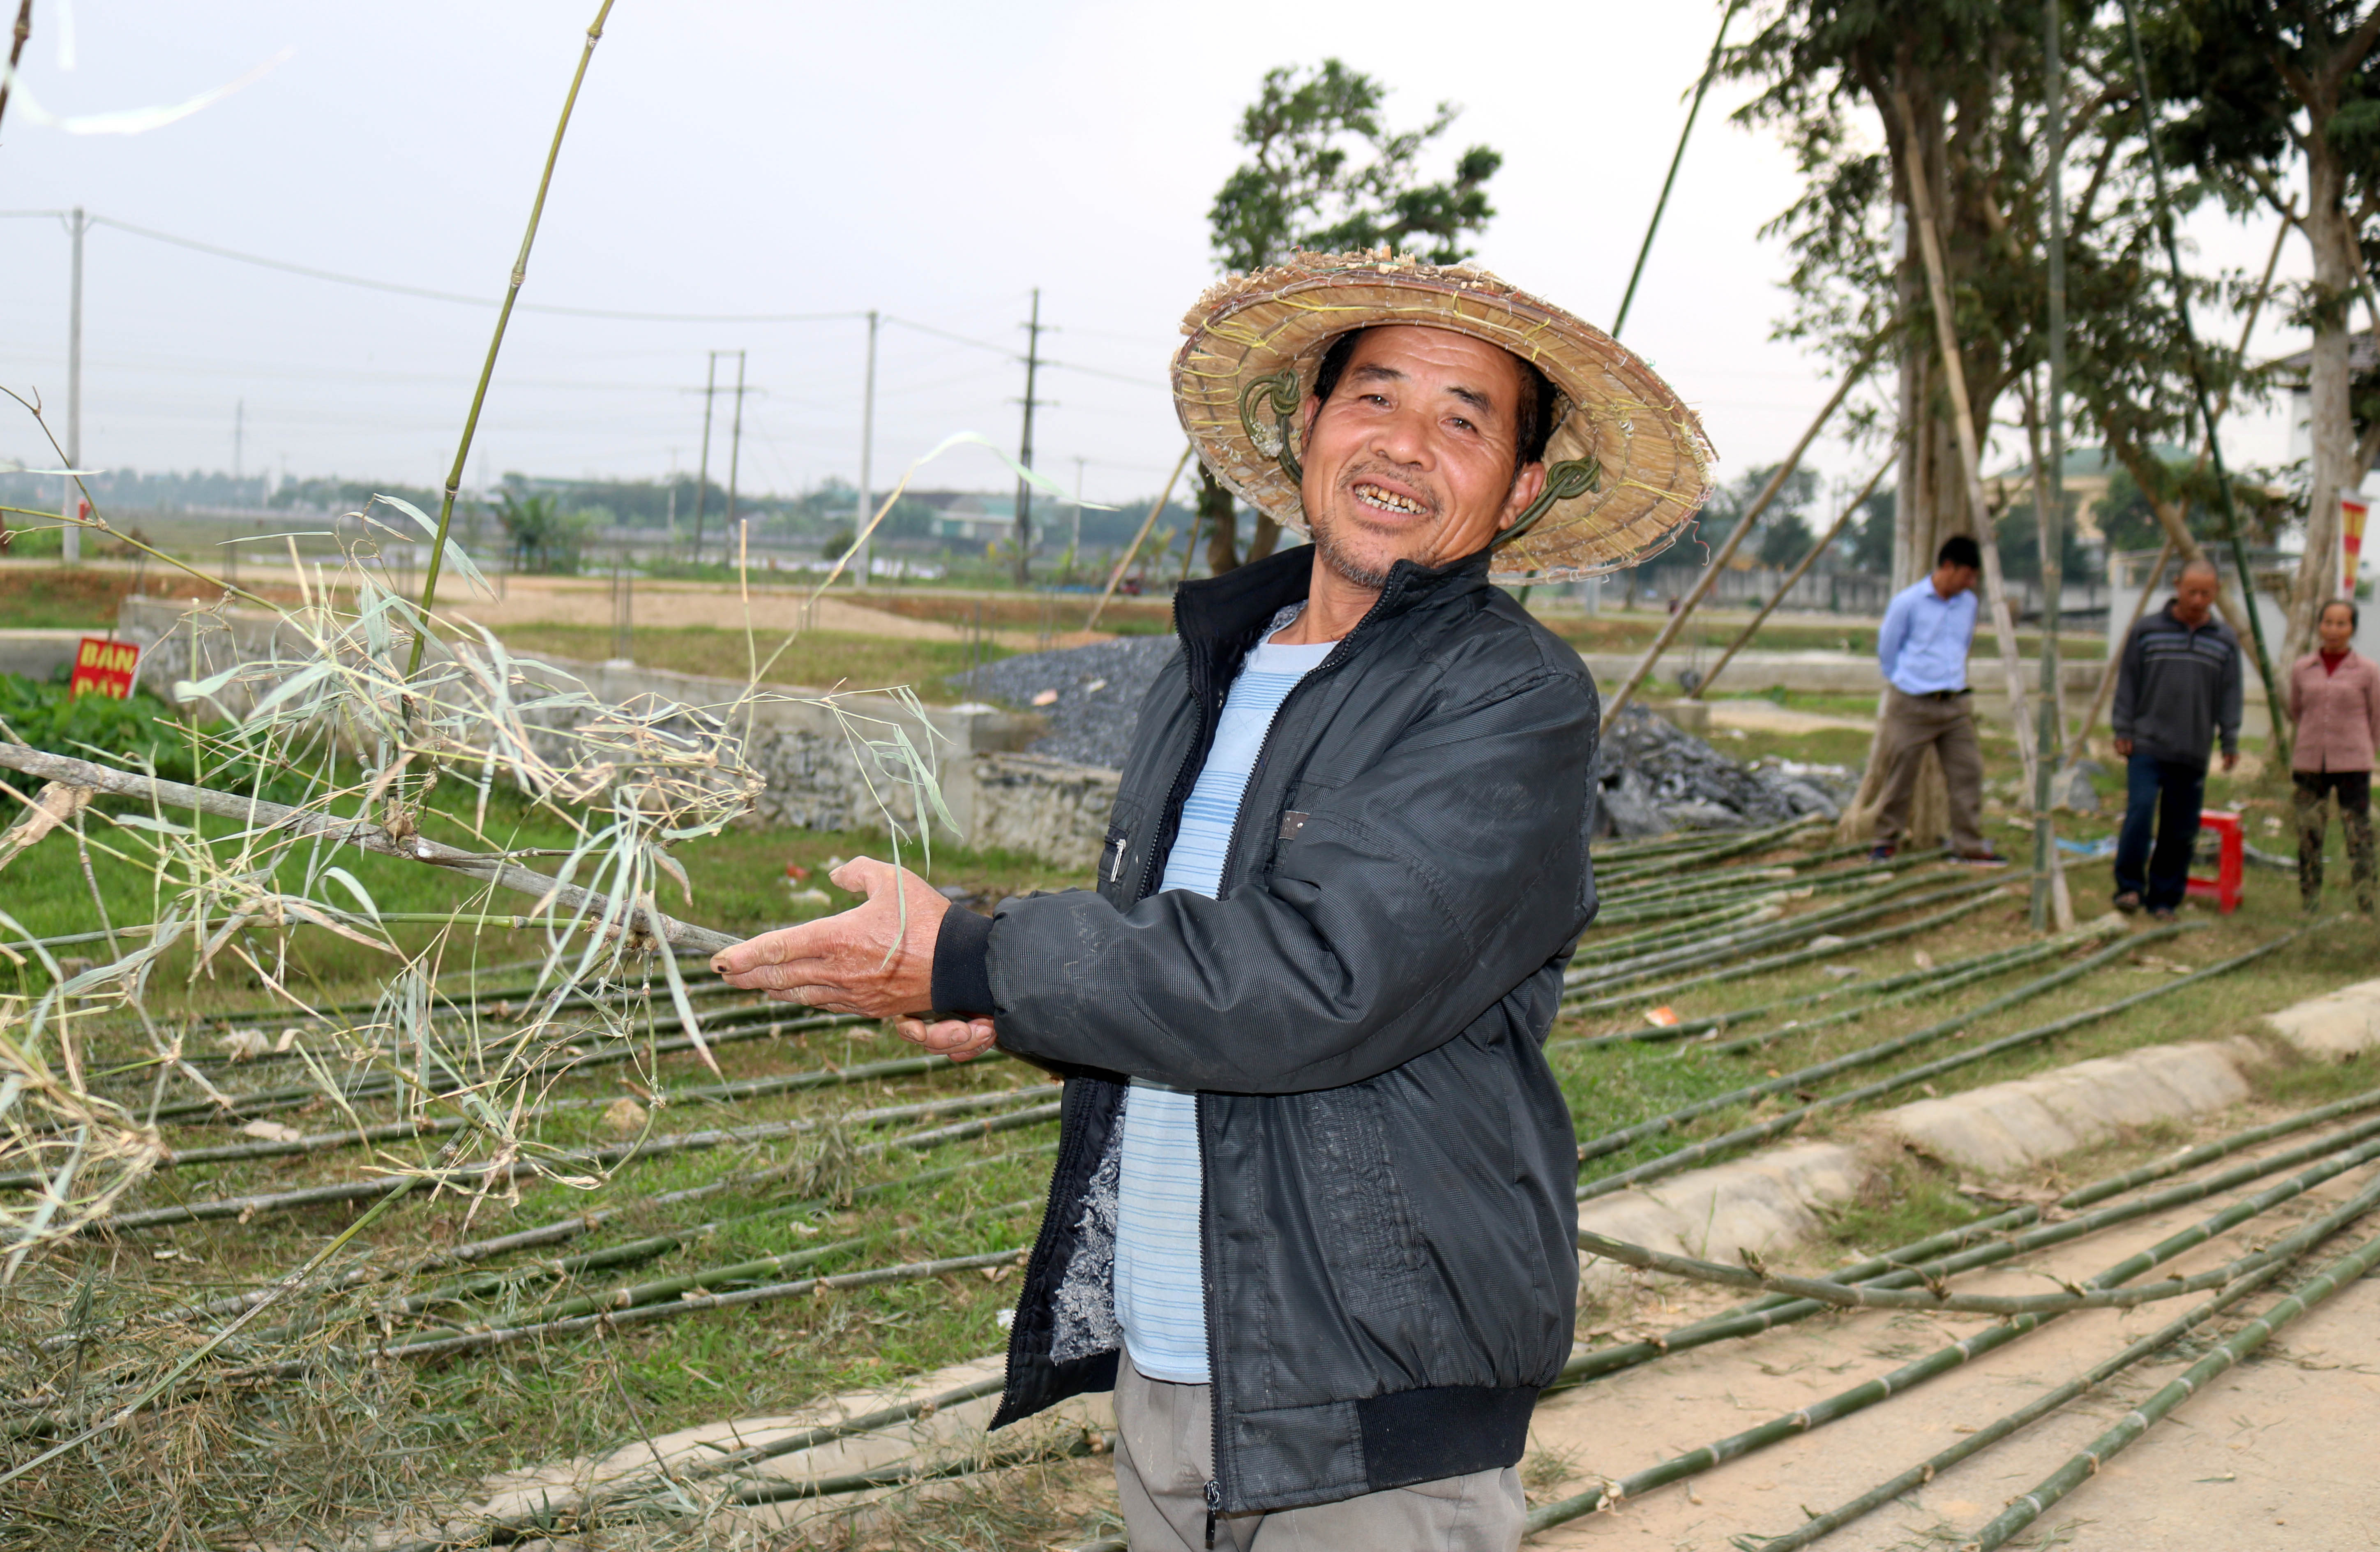 Một người dân xã Yên Sơn phấn khởi khi chọn được tre vừa ý để làm nêu. Theo những người cao tuổi ở đây, cây tre để làm nêu đẹp là cây cao, thân thẳng, cong ở phía ngọn